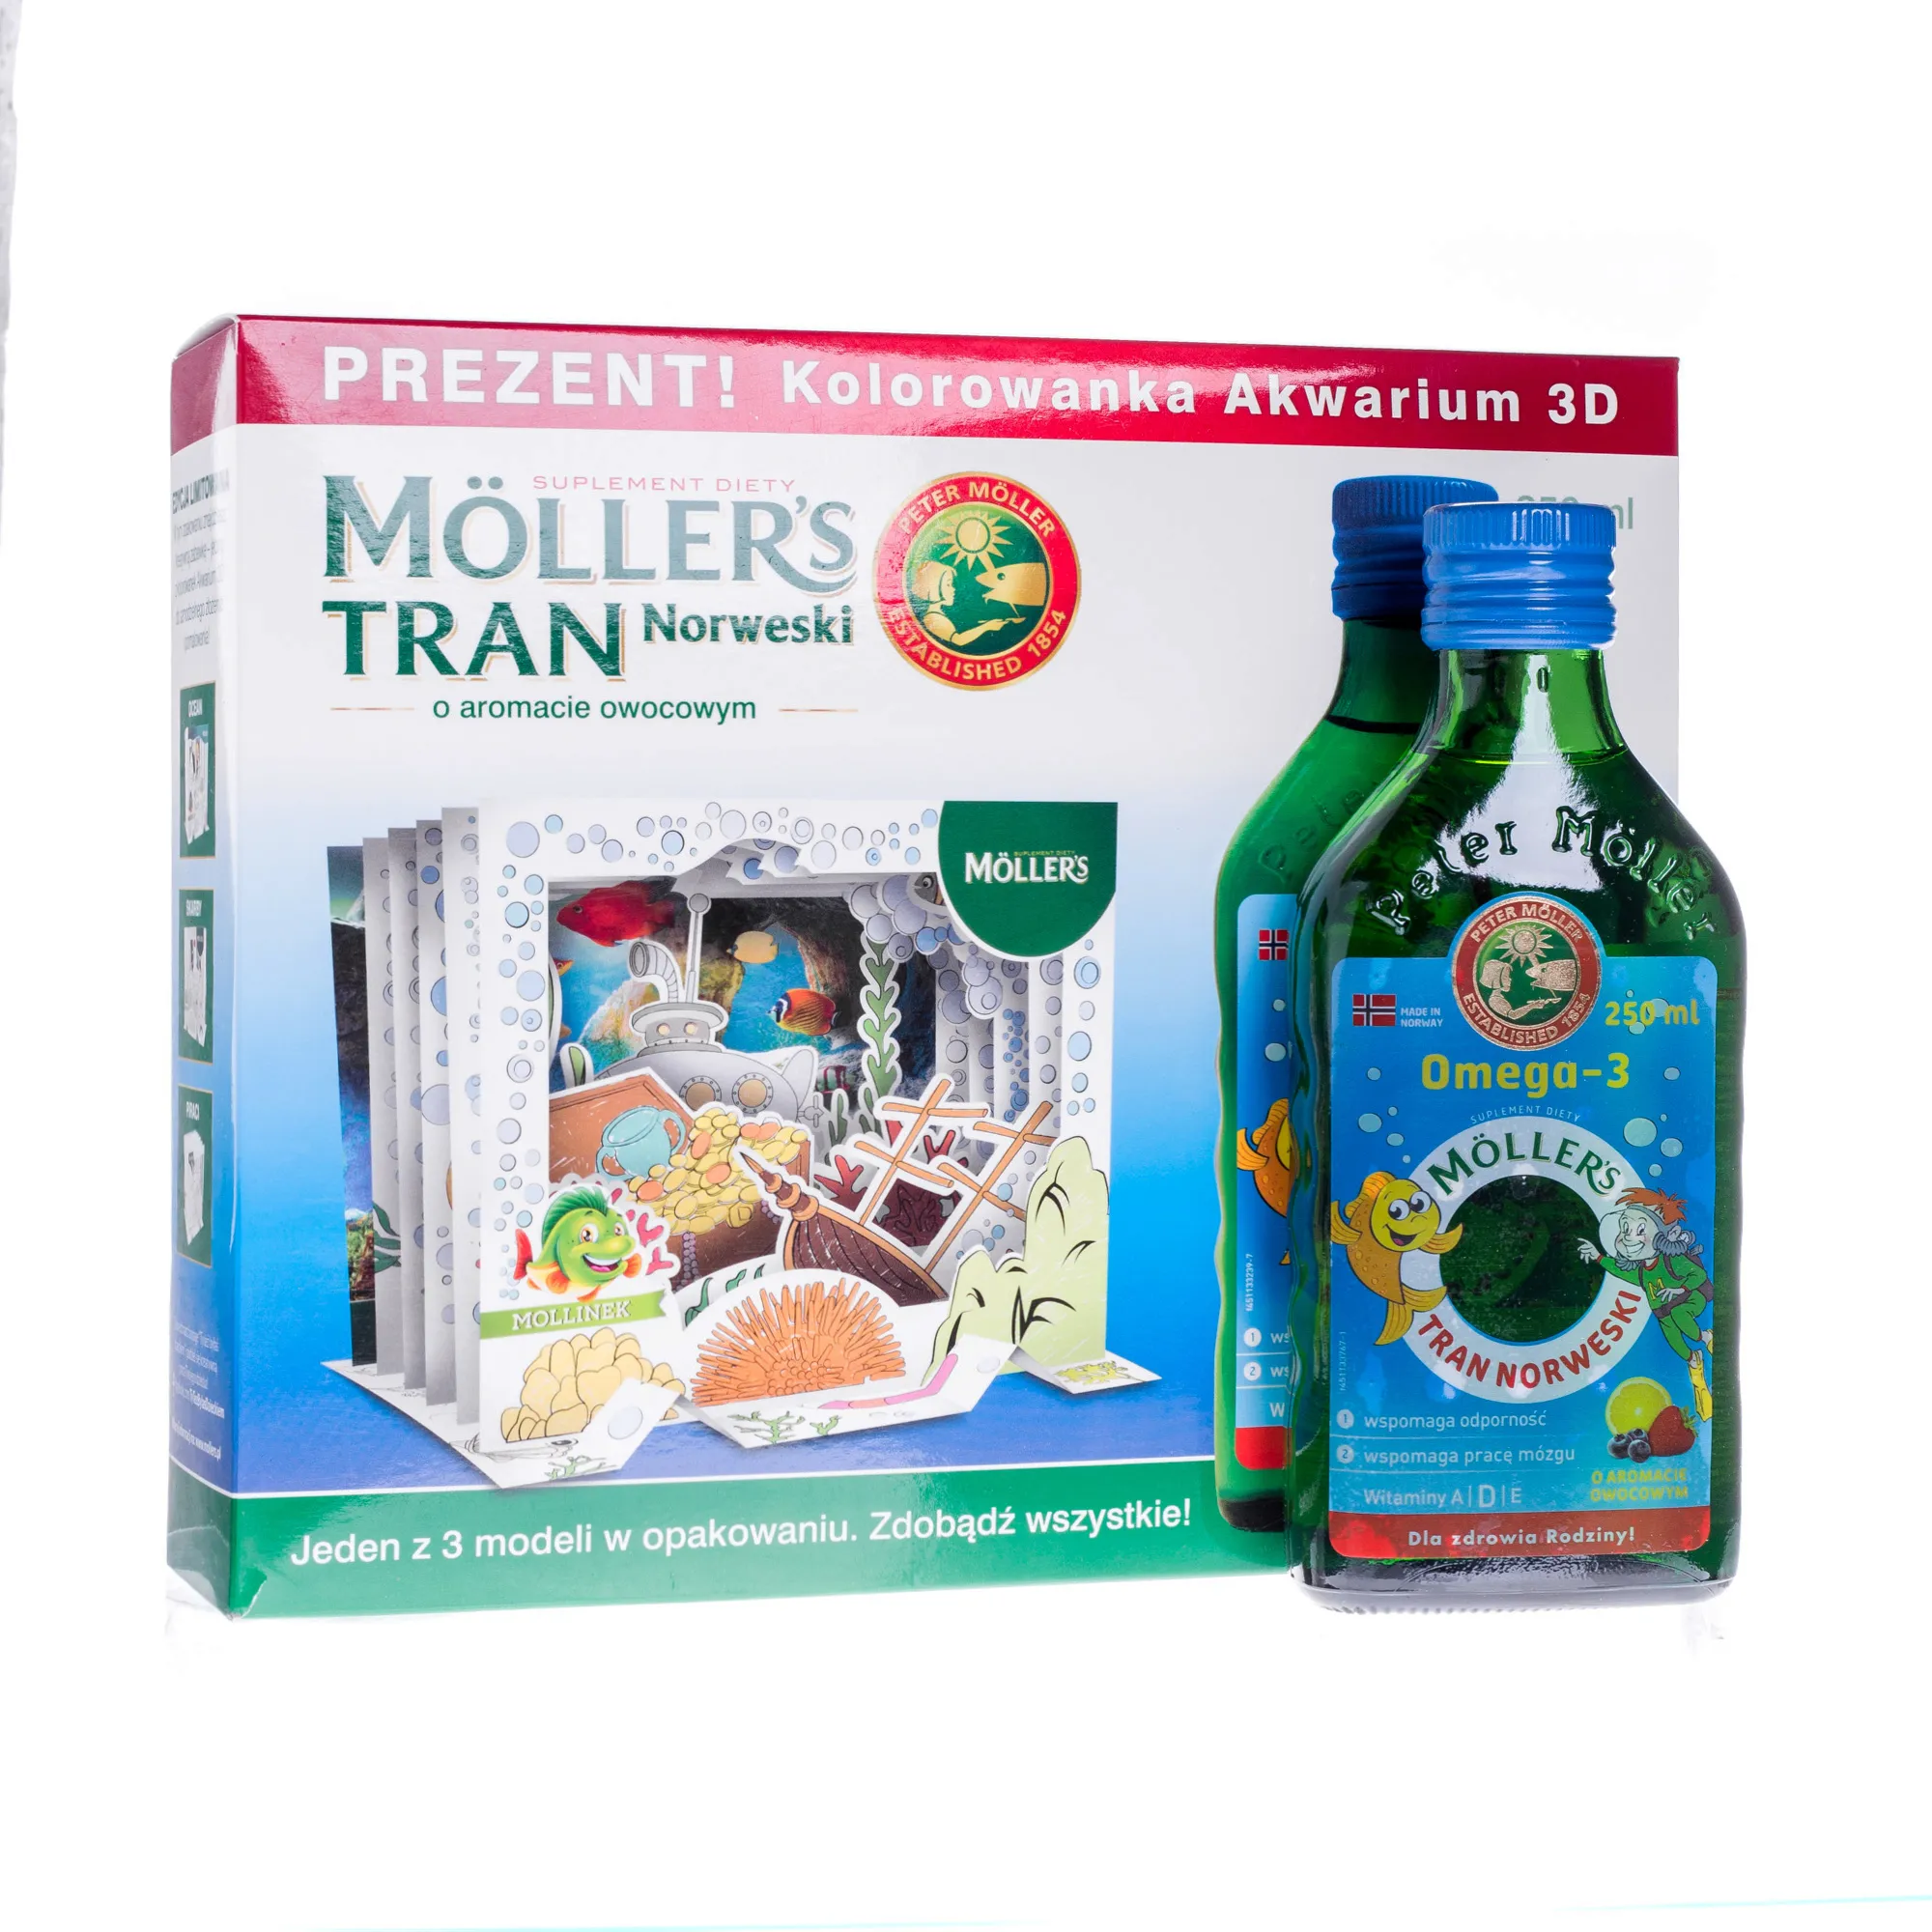 Moller's Tran Norweski o aromacie owocowym + akwarium 3D, 250 ml